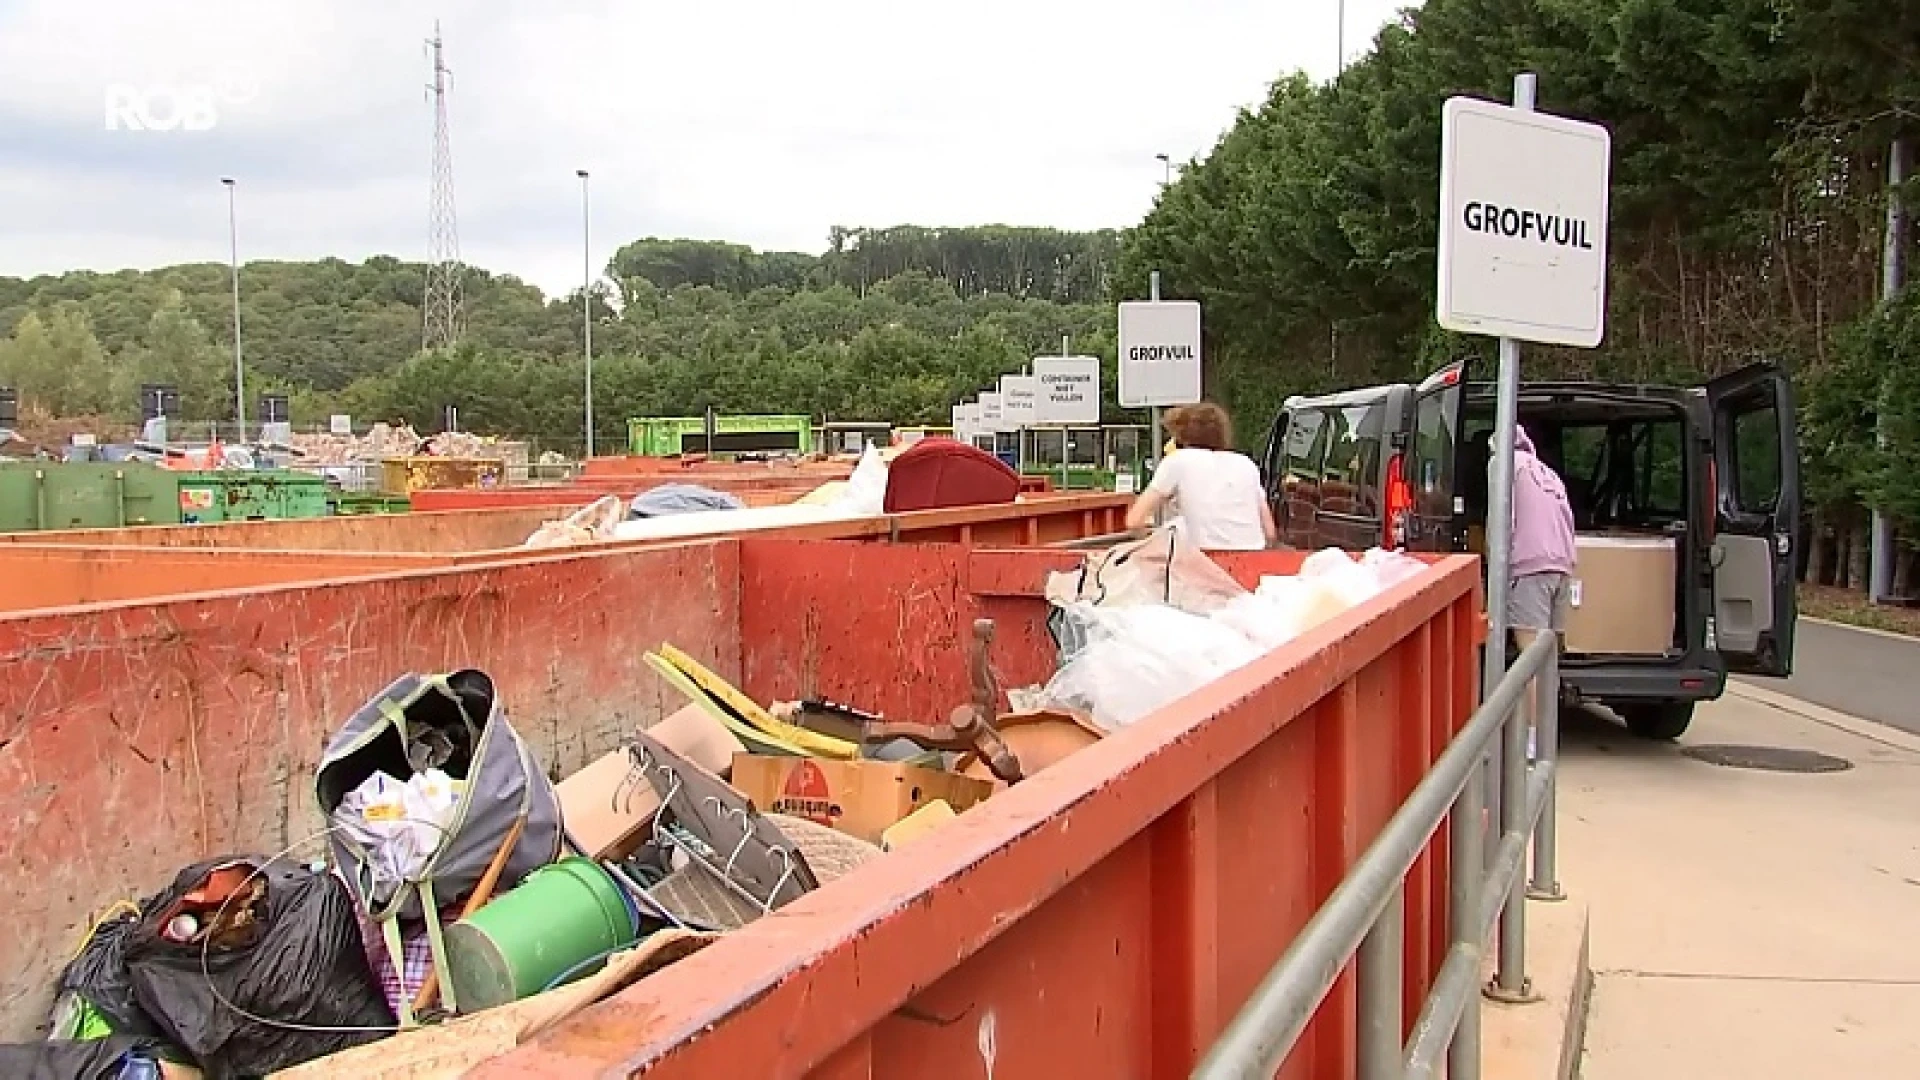 Recyclageparken nemen maatregelen tijdens hittegolf